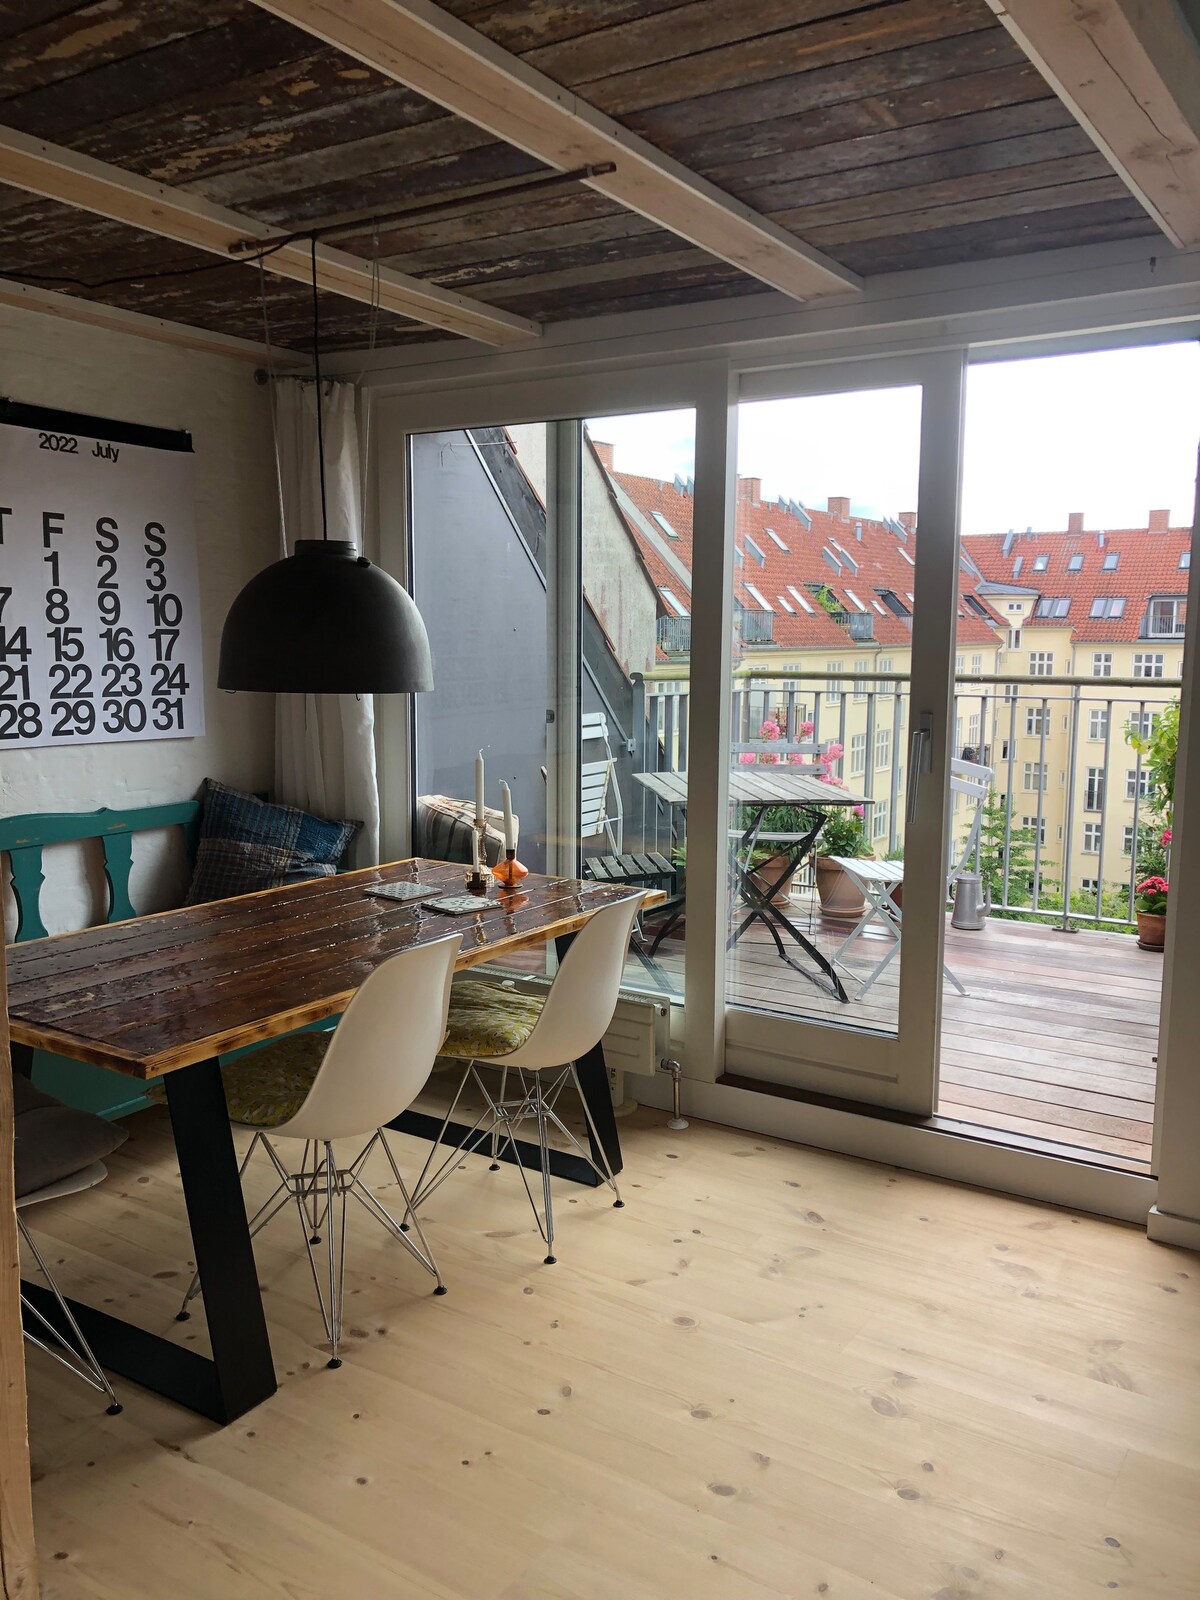 哥本哈根漂亮舒适的房间